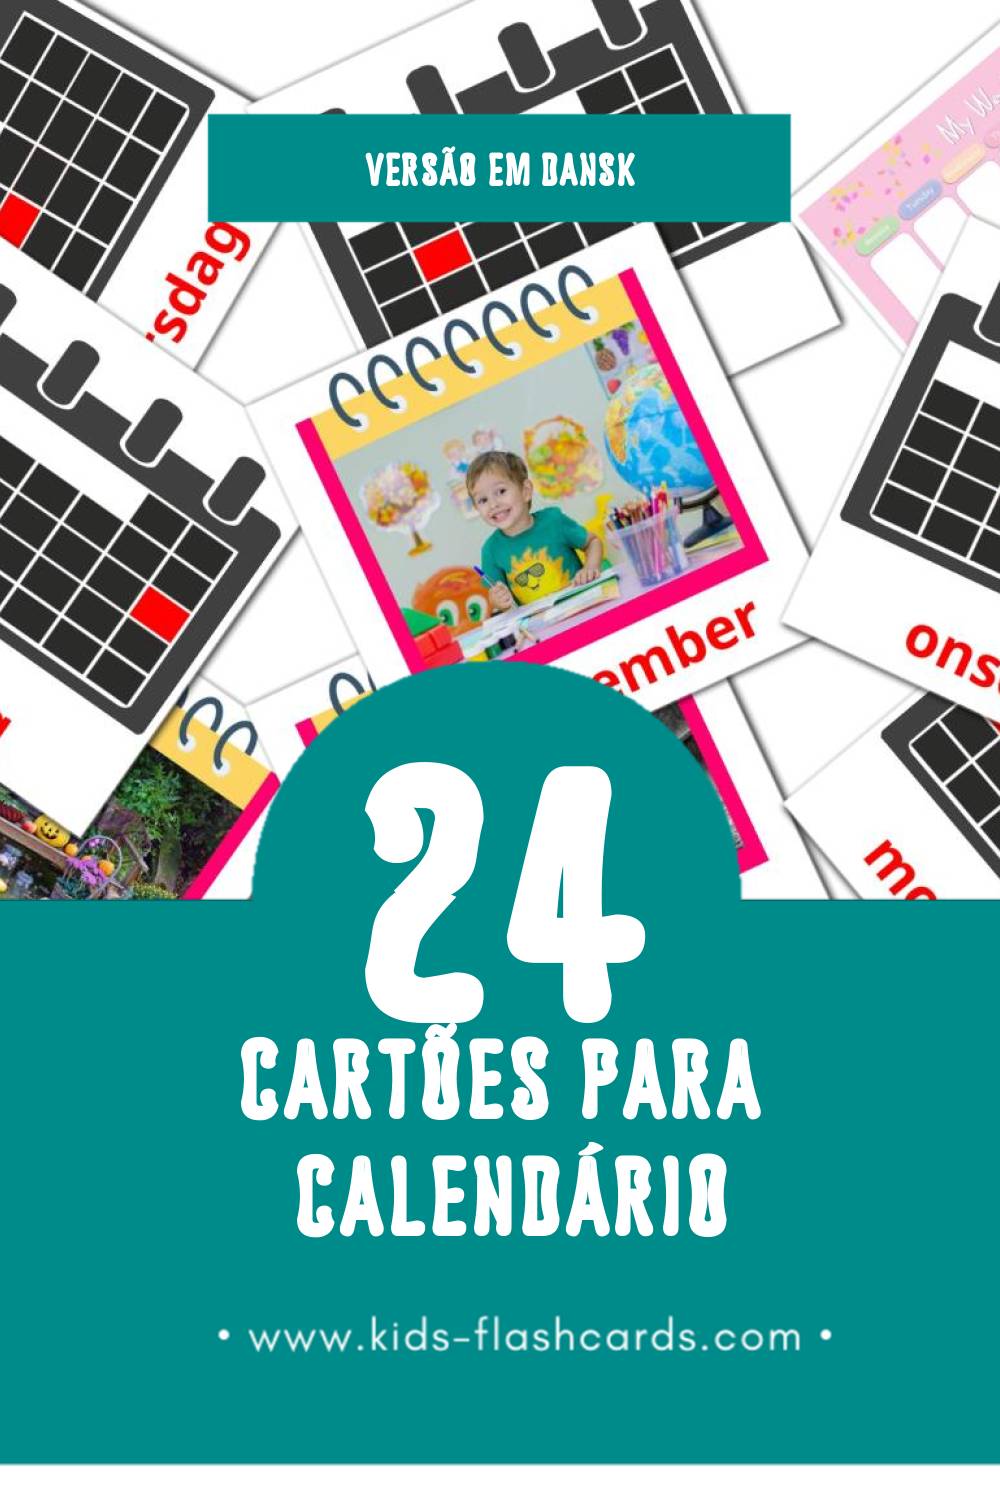 Flashcards de Kalender Visuais para Toddlers (24 cartões em Dansk)